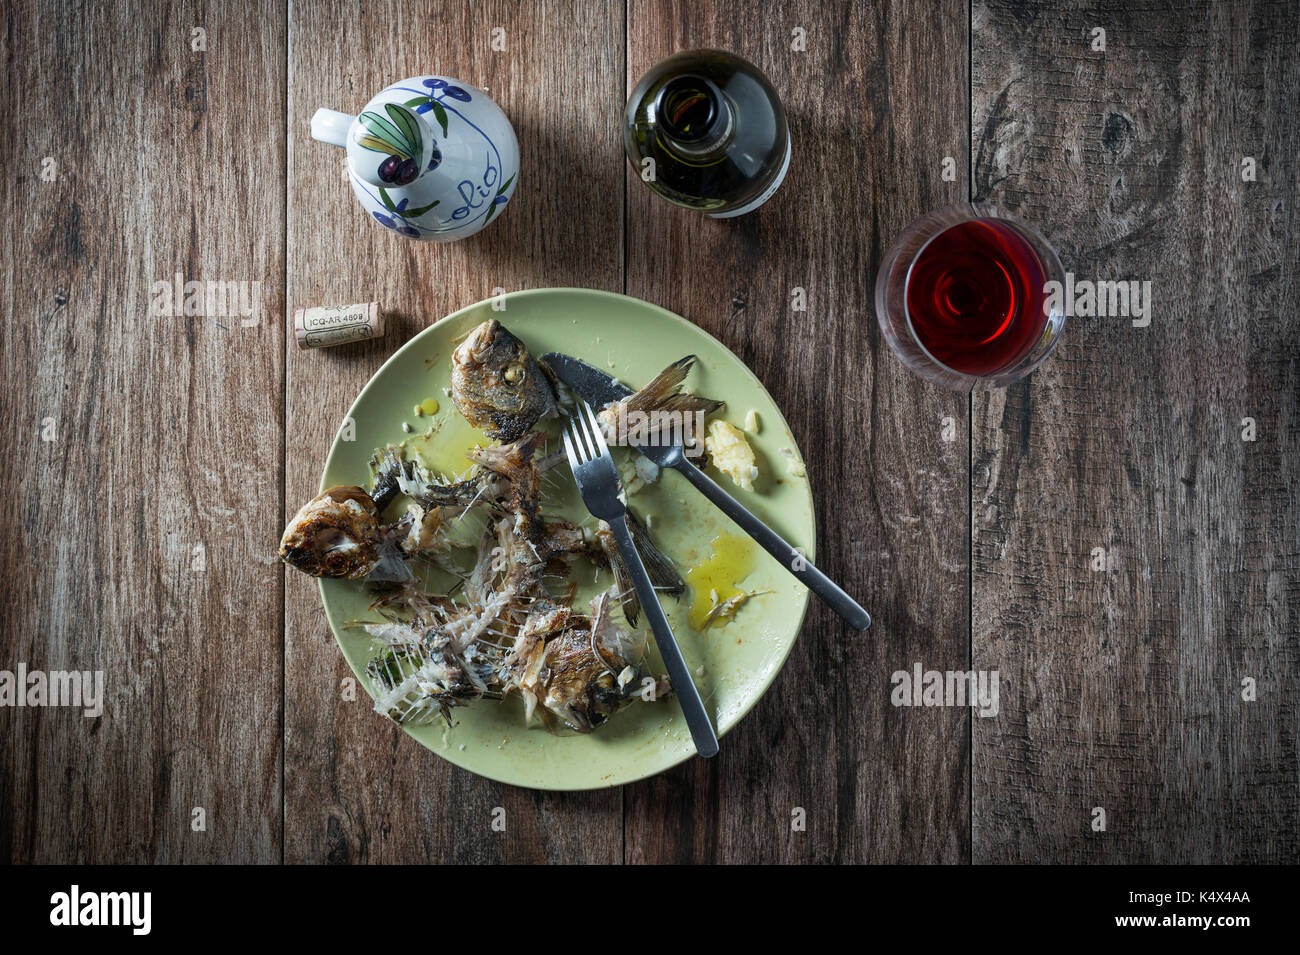 Fisch auf dem Teller mit Messer und Gabel, Glas und Flasche Wein. Beiseite stellen. Essensreste, Hausmüll entsorgt. Stockfoto